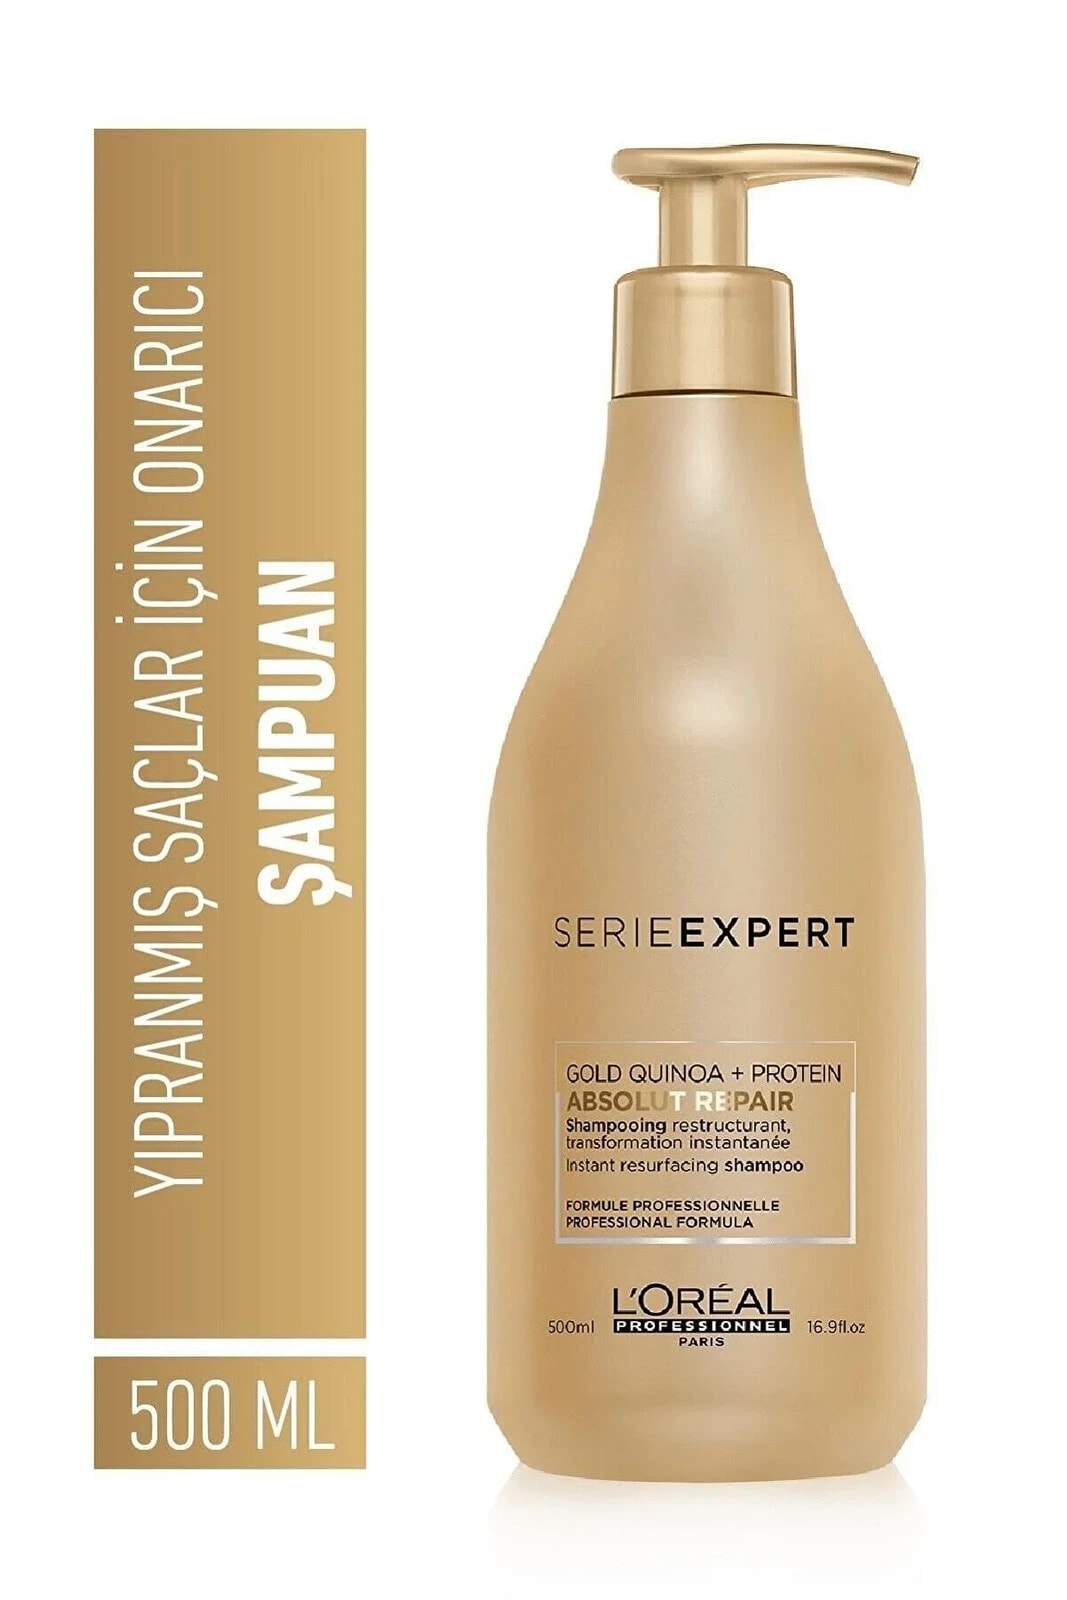 Gold Quinoa Absolut Yırpanmış Saçlar İçin Yenileyici Şampuan 500.ml GKÜRN492